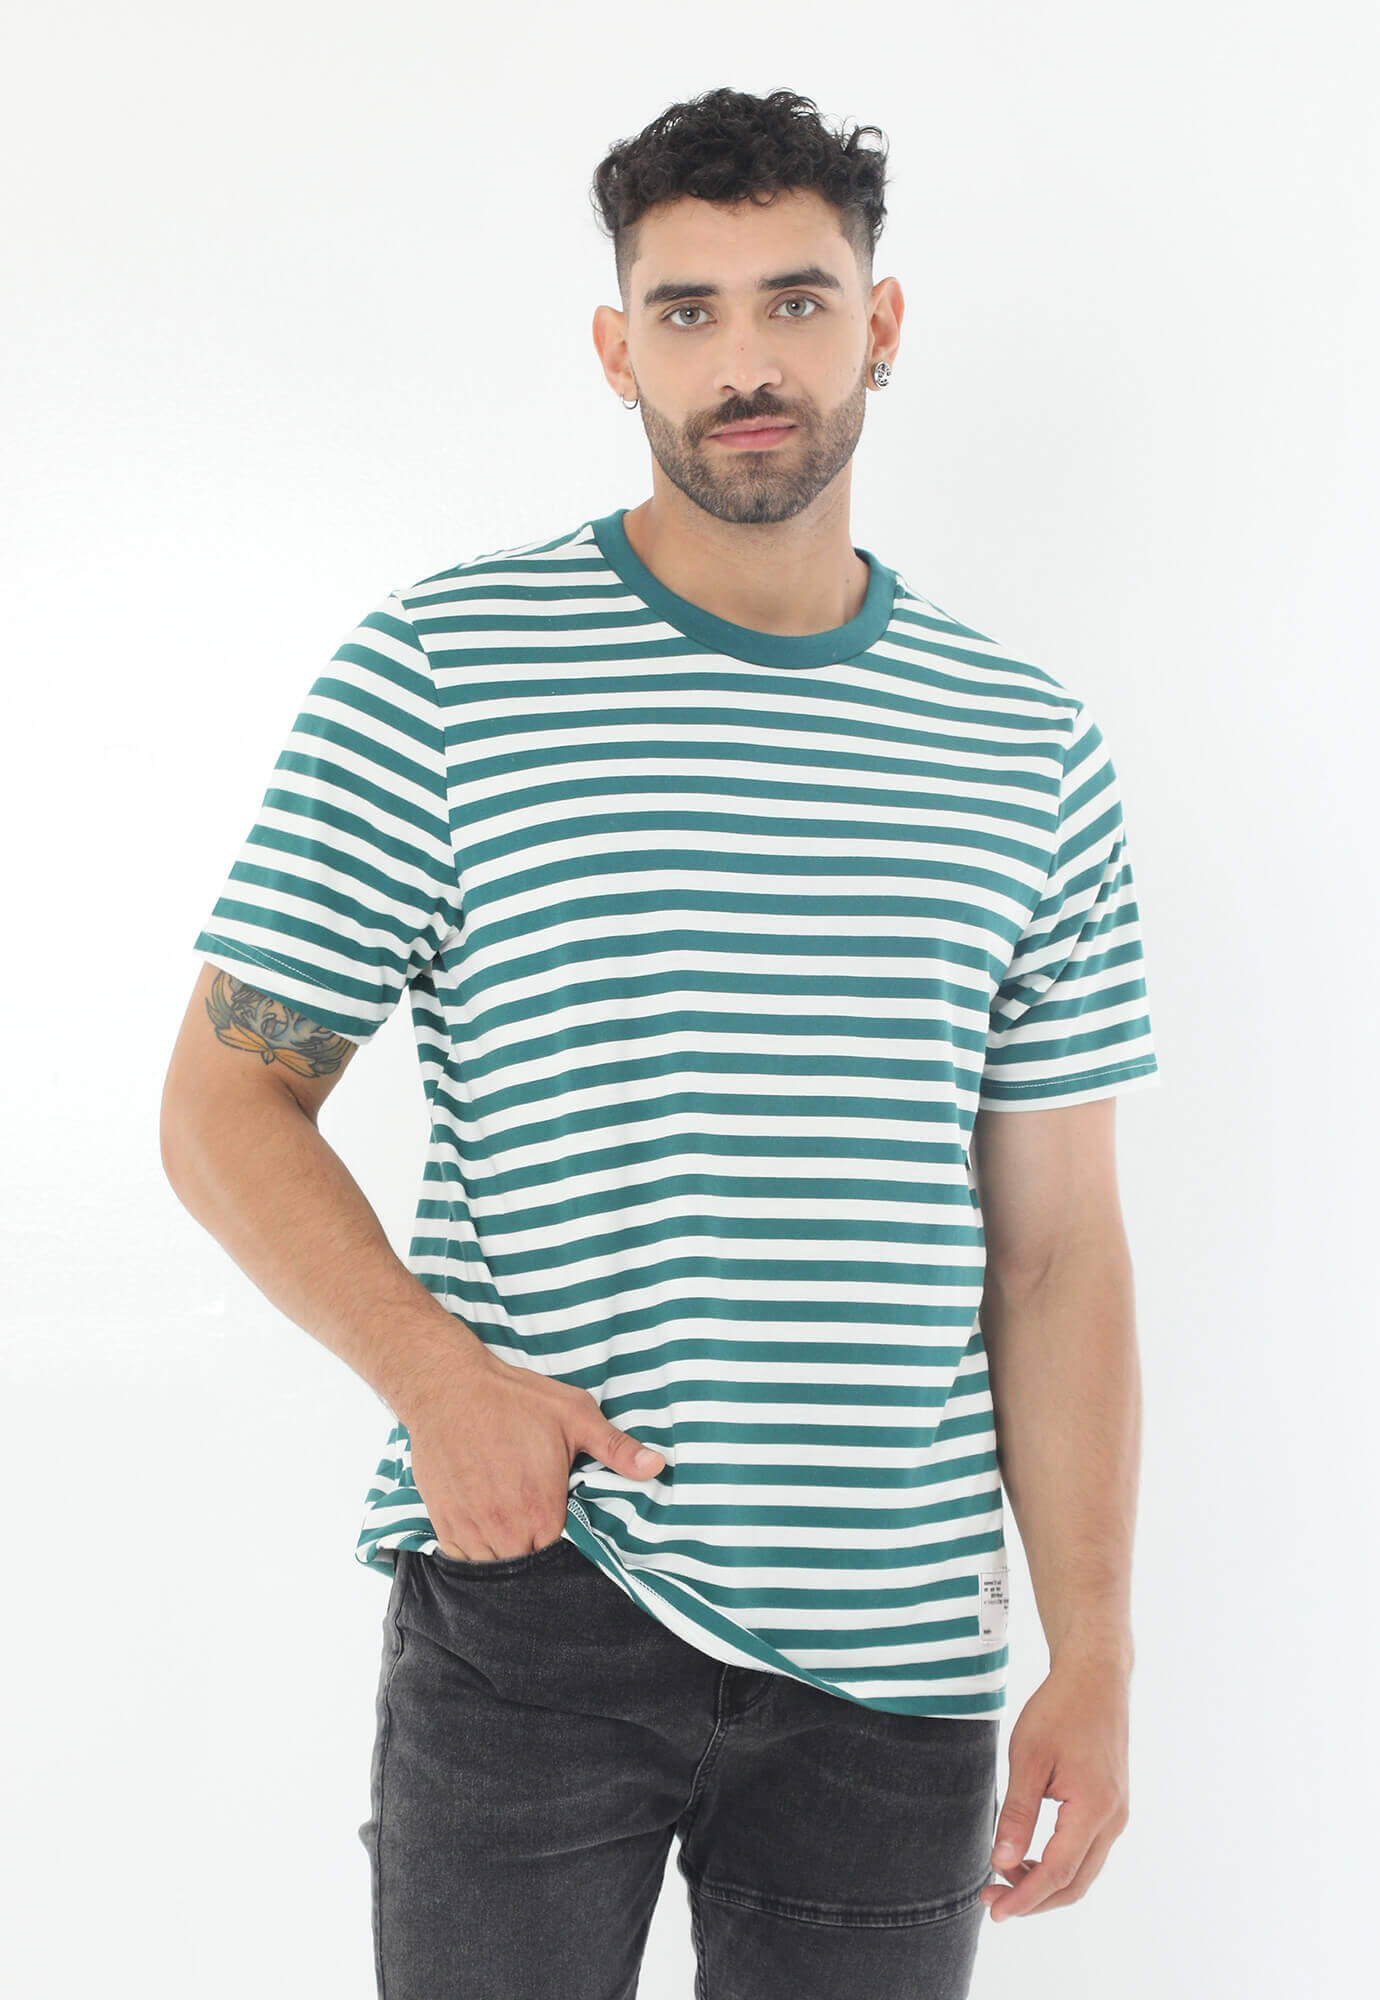 Camiseta verde manga corta, de rayas y cuello redondo para hombre